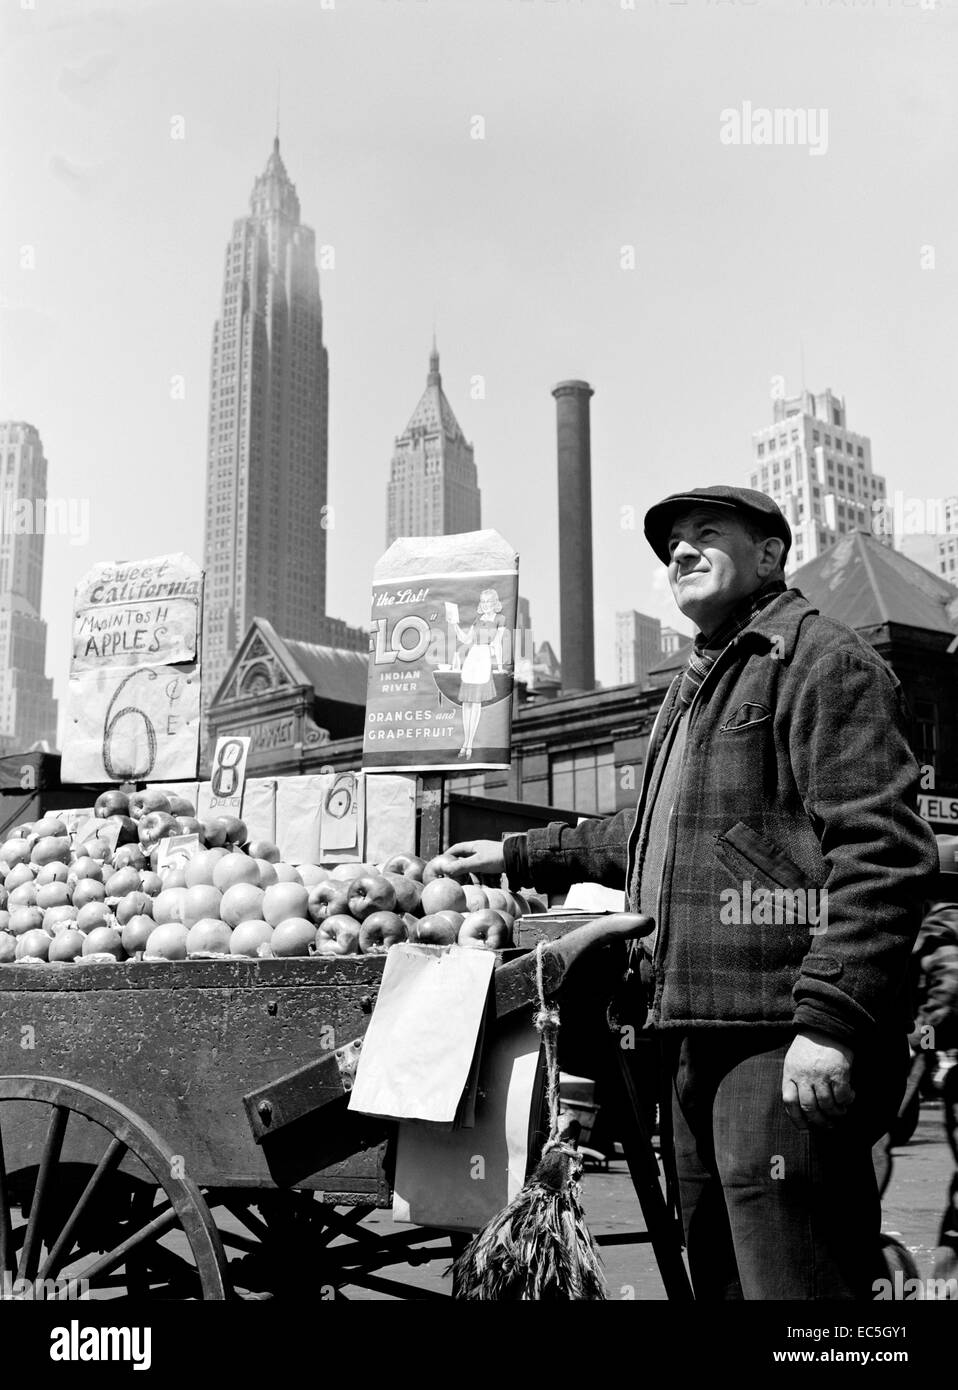 Spingere il carrello fornitore di frutta al Fulton Fish Market - New York New York. Circa 1943. Fotografia di Gordon Parchi/FSA Foto Stock